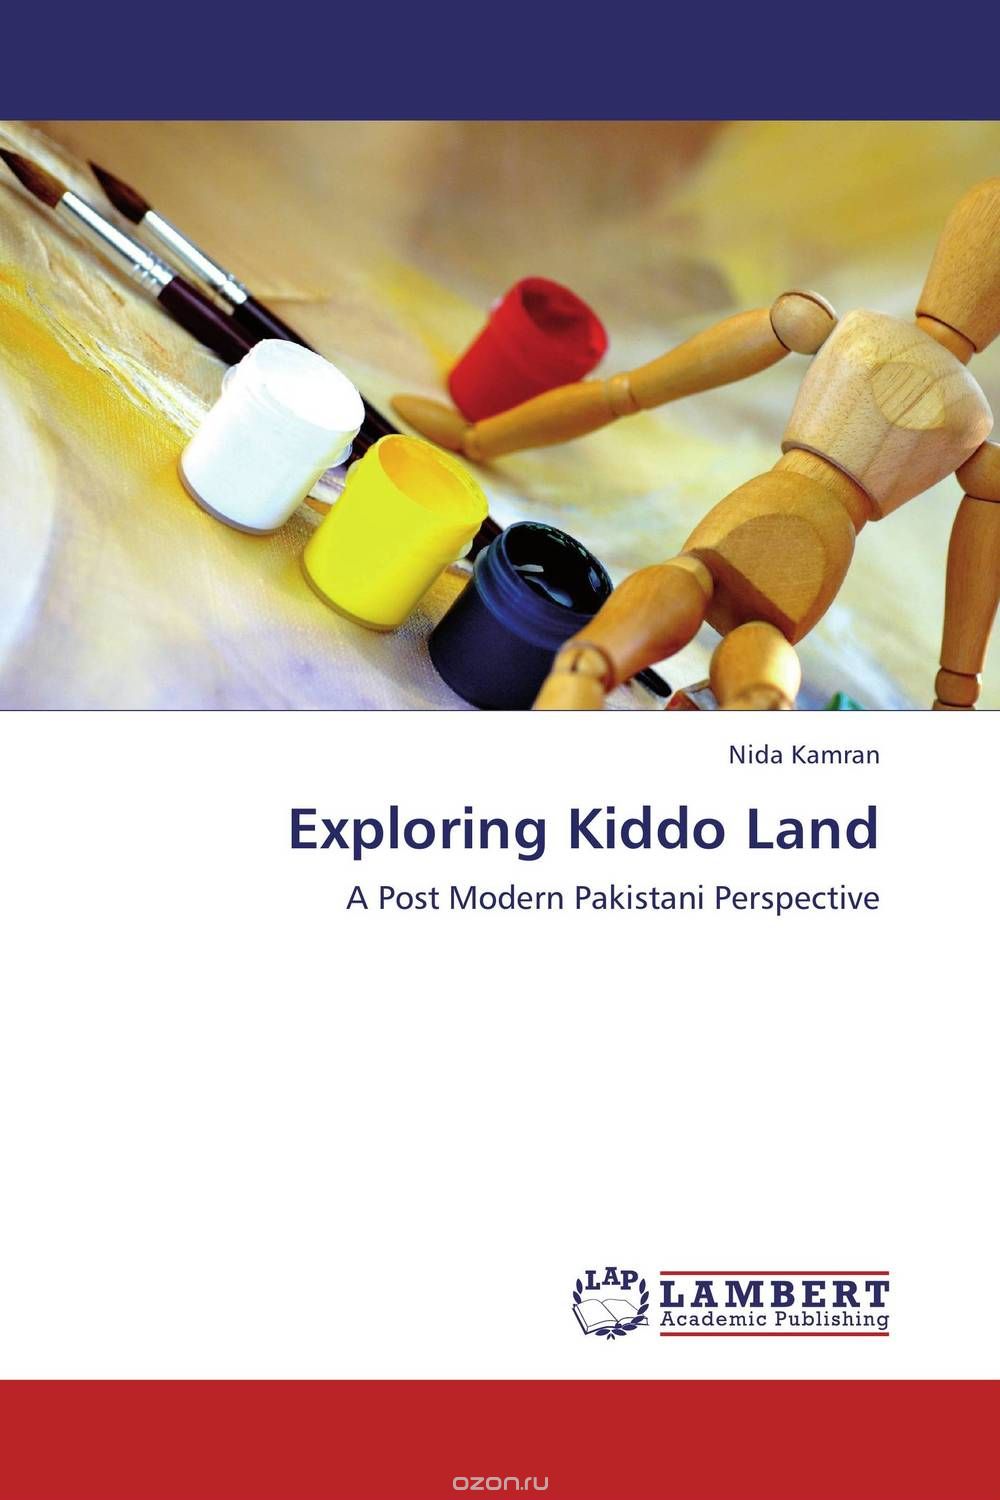 Скачать книгу "Exploring Kiddo Land"